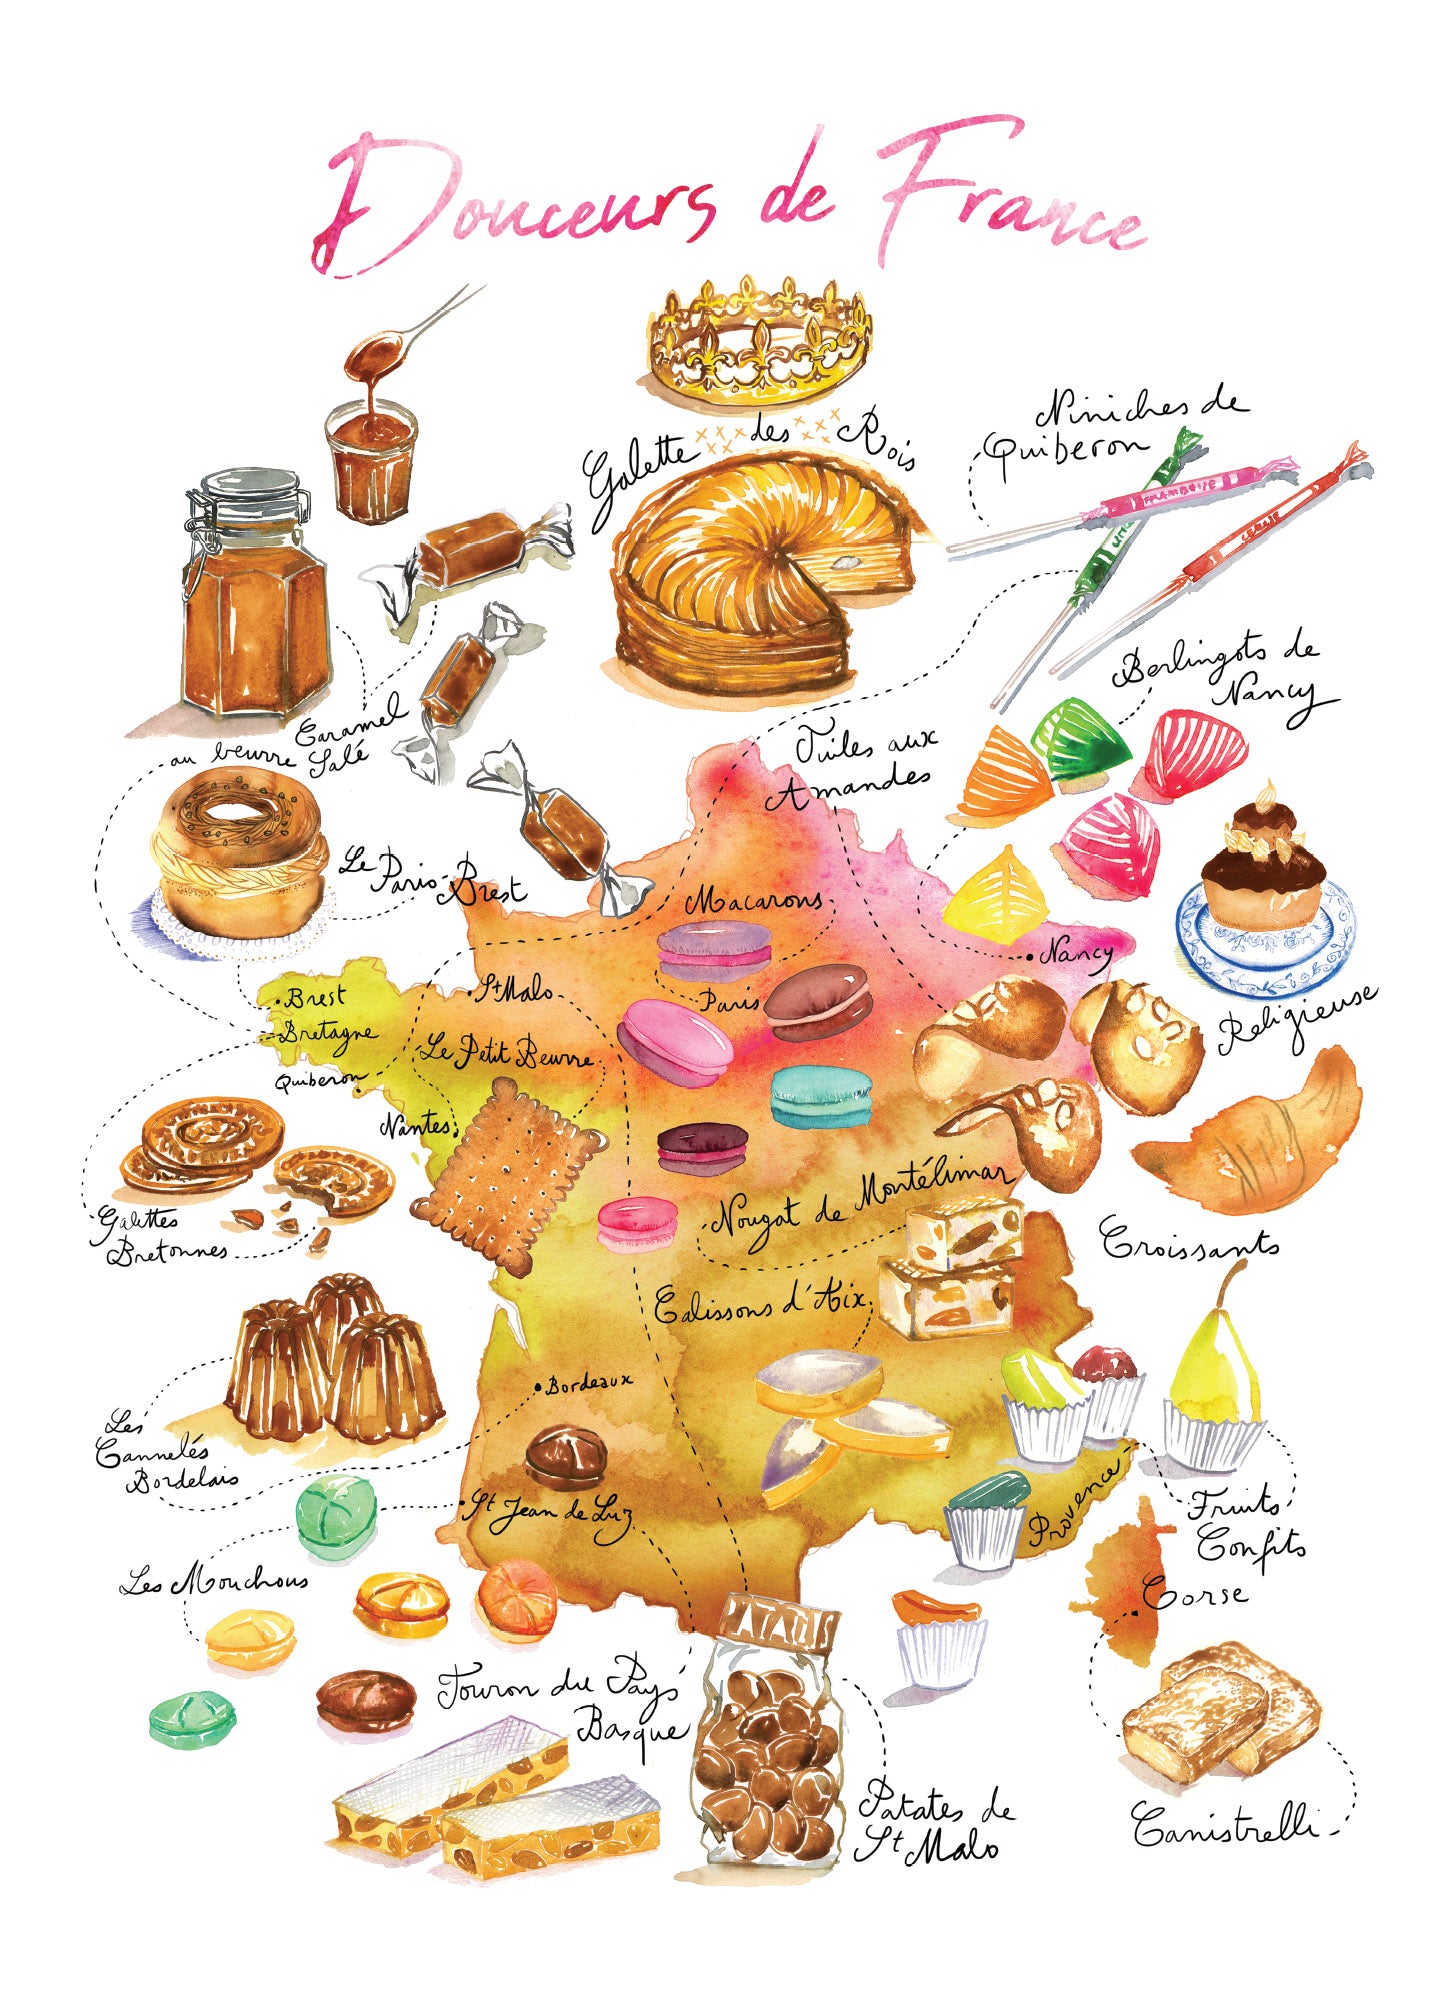 Douceurs de France - Linge de maison / French Desserts Kitchen Linen